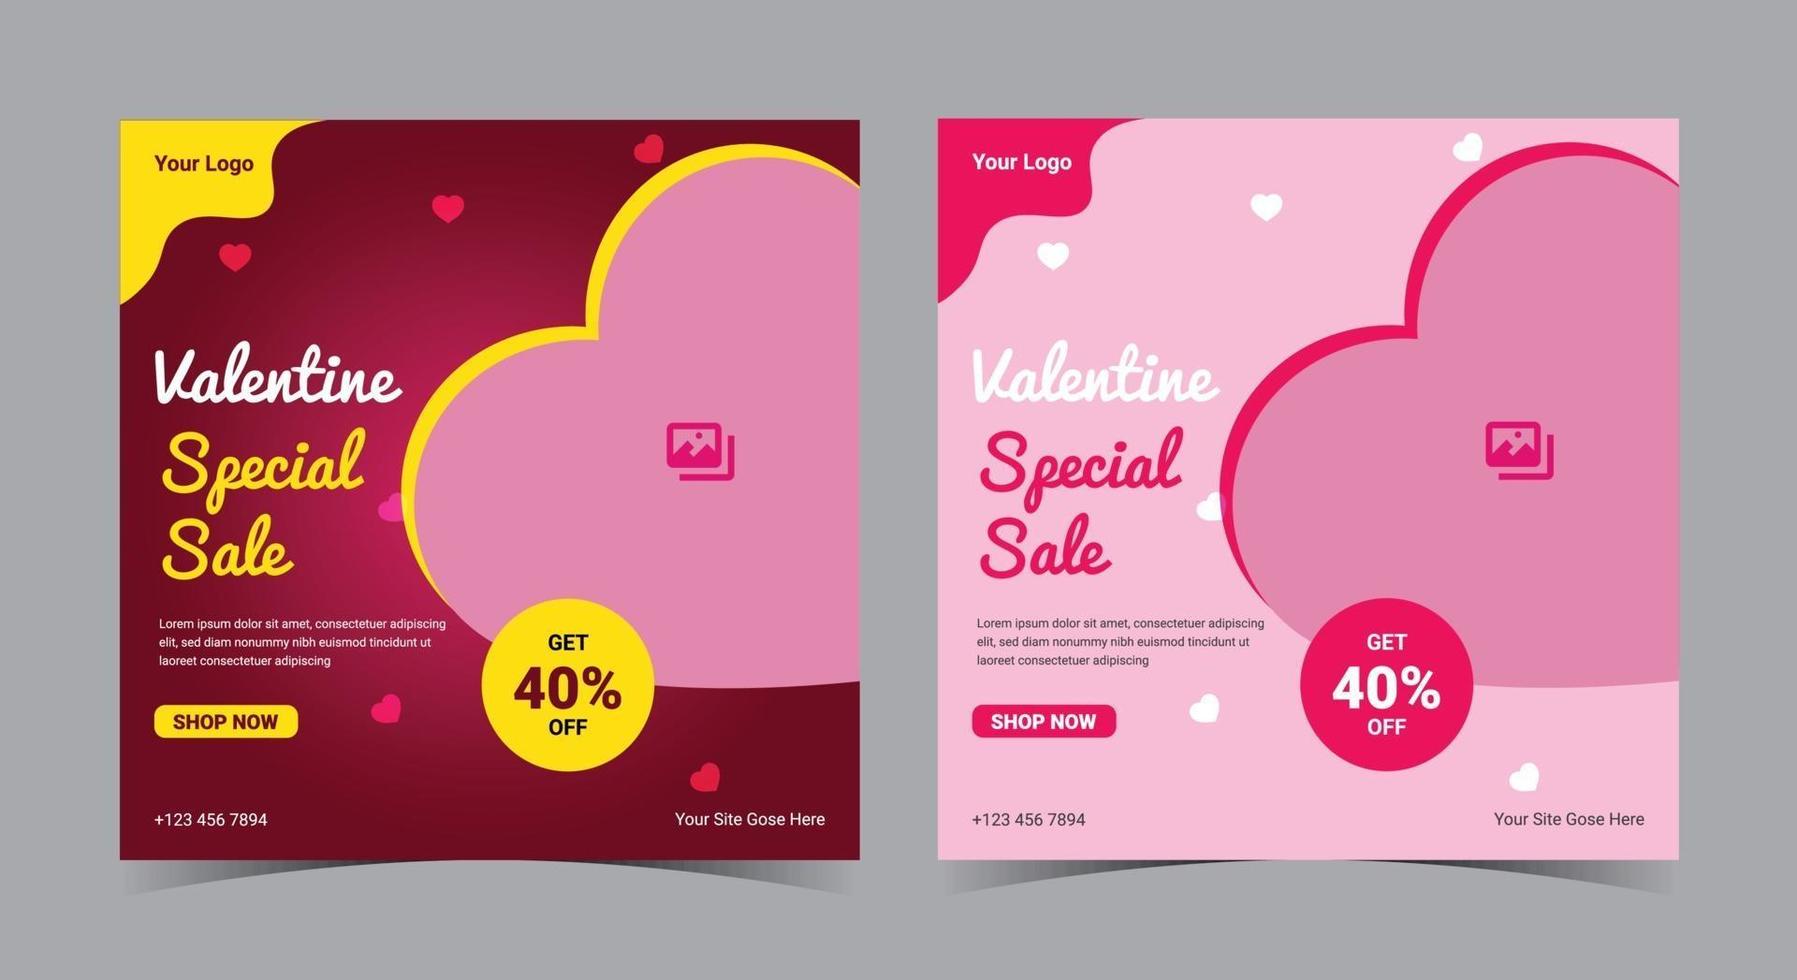 pôster de venda especial do dia dos namorados, postagem e folheto de mídia social do dia dos namorados vetor